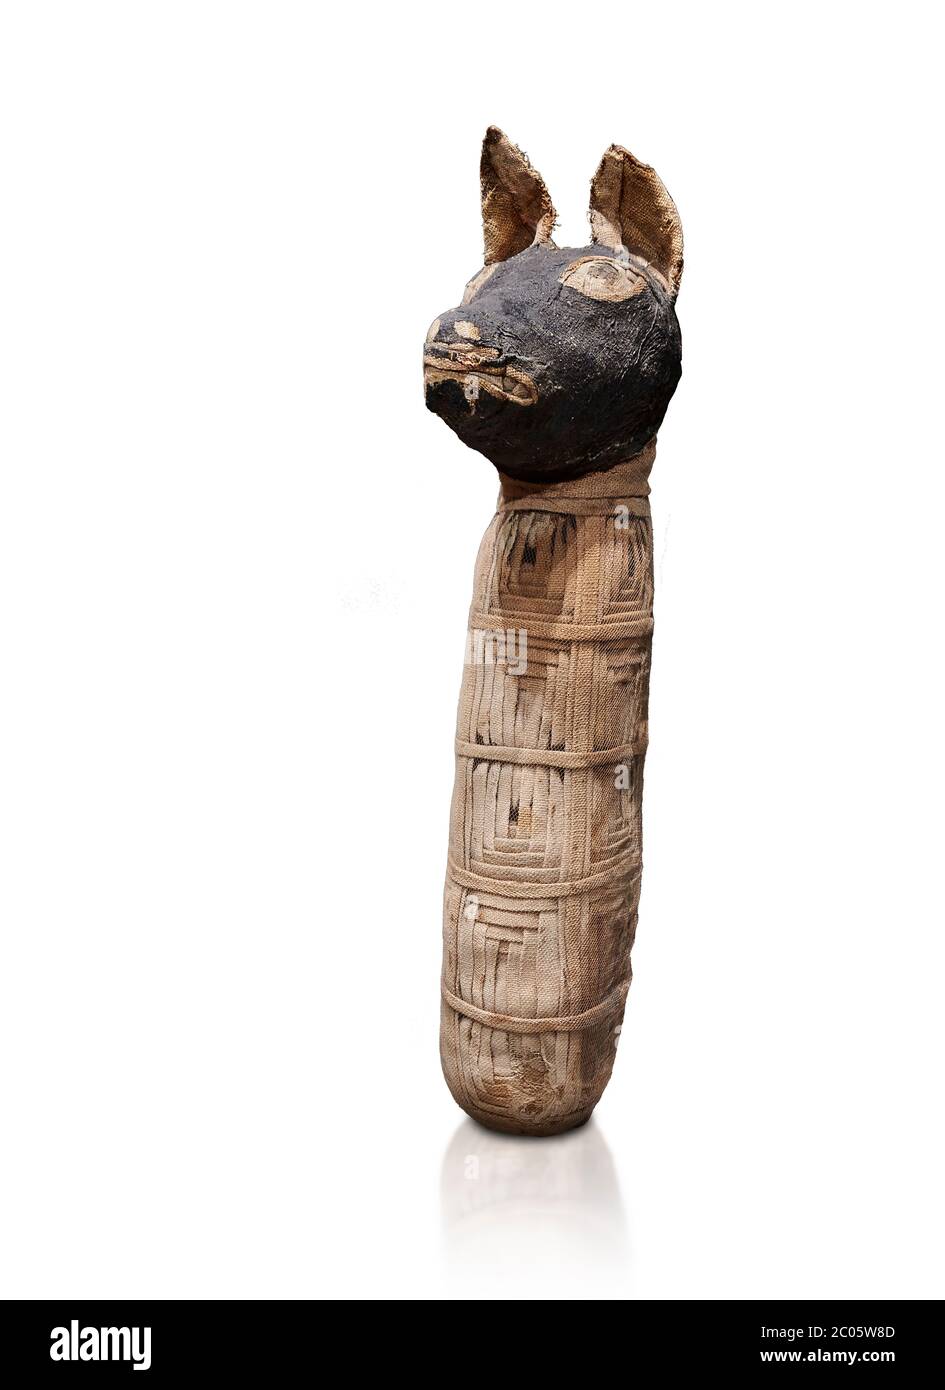 Alte ägyptische Mumie eines Kanids, Leinen, späte Periode, Ptolomäische Perios (722-30BC). Ägyptisches Museum, Turin. Weißer Hintergrund EIN Canid ist Mitglied von t Stockfoto